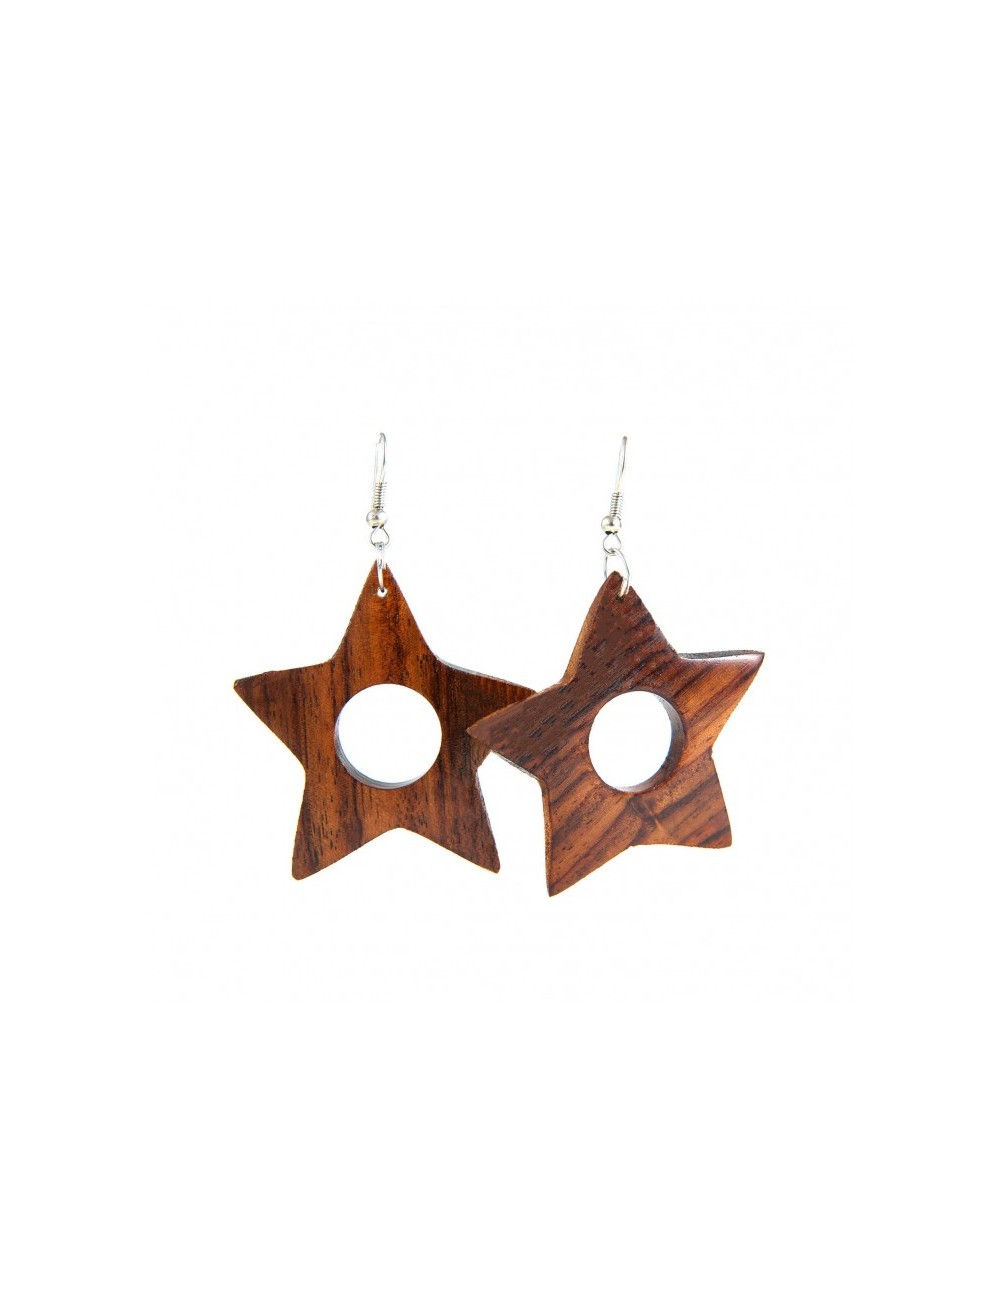 Pendientes de madera tropical en forma de estrella.